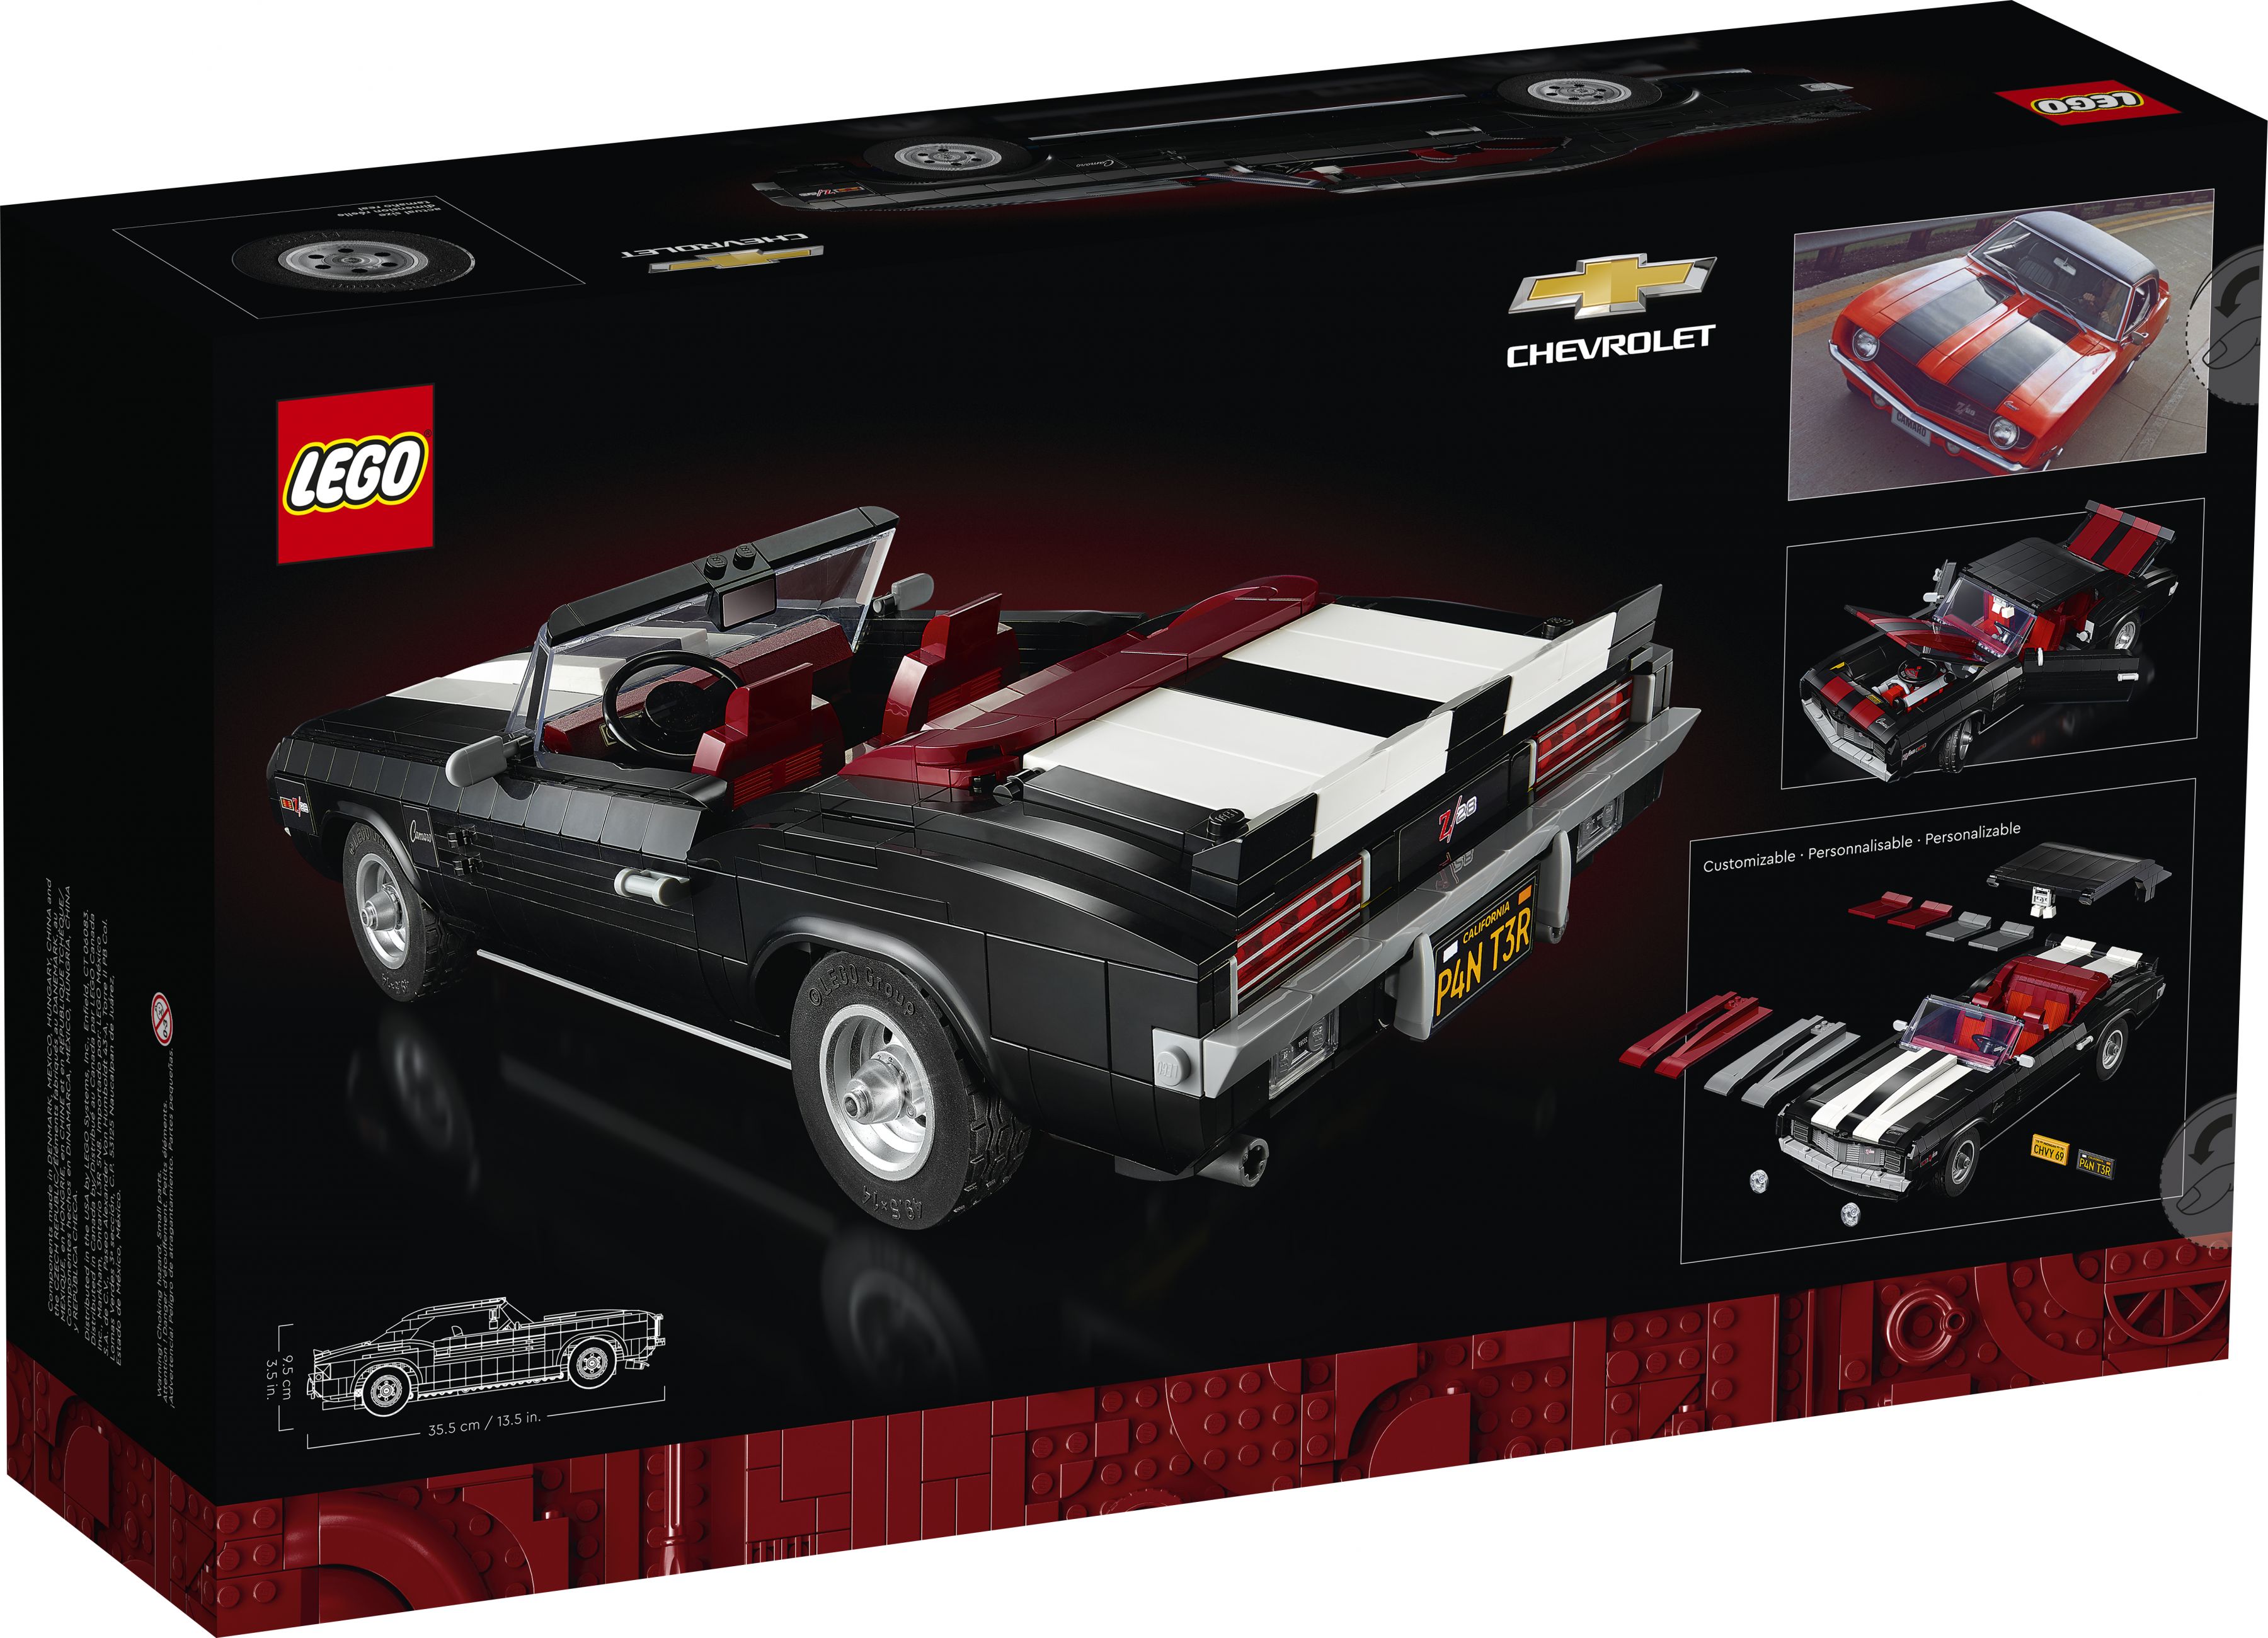 LEGO Advanced Models 10304 Chevrolet Camaro Z28 LEGO_10304_Box5_v39.jpg